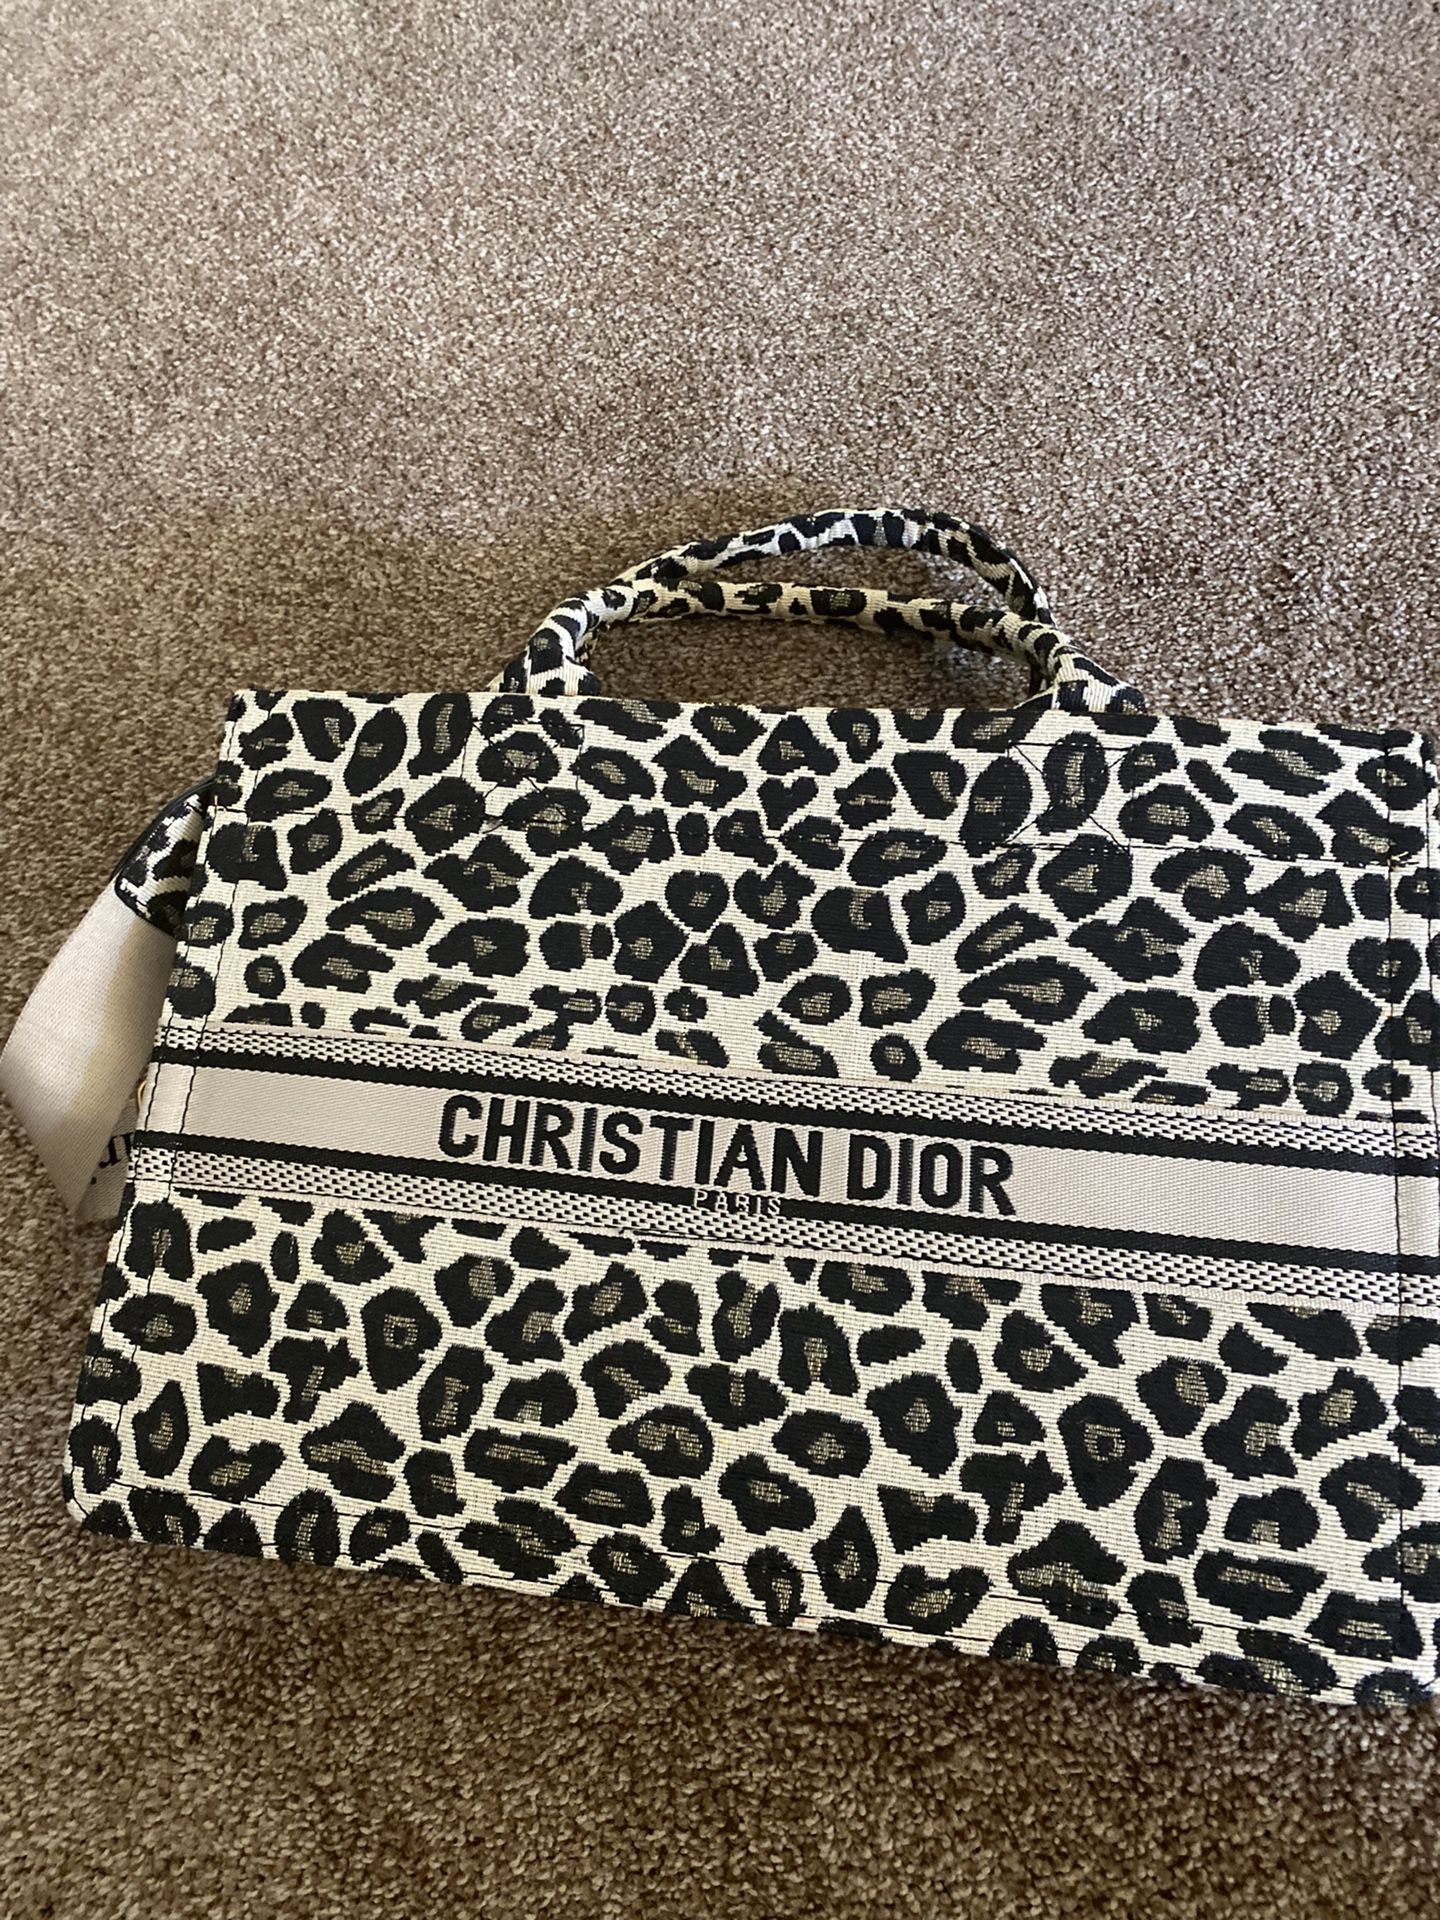 Christian Dior Tote Satchel Bag With Shoulder Strap